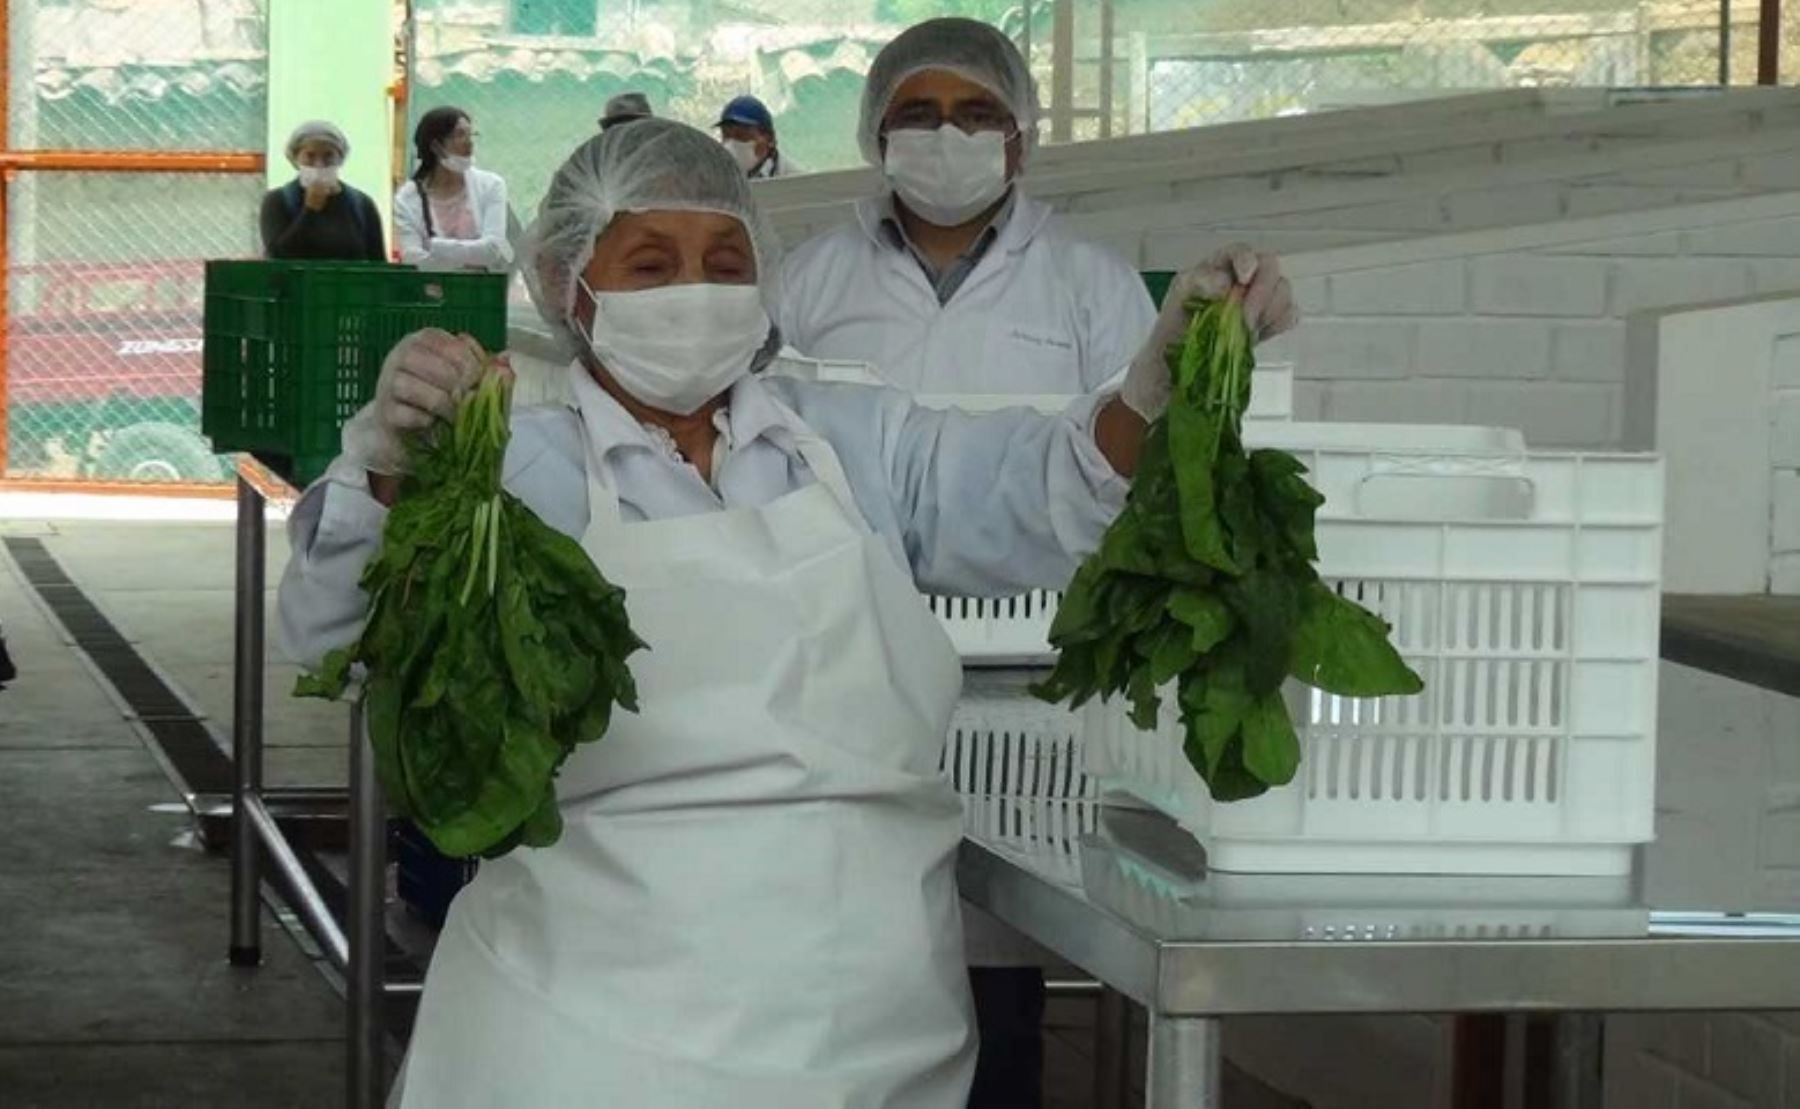 La Asociación de Productores Agroecológicos “Ayllu Kushisha” inauguró la primera planta de procesamiento primario de hortalizas en el distrito de Pucará, provincia de Huancayo, región Junín, la cual obtuvo la autorización del Servicio Nacional de Sanidad Agraria (Senasa).